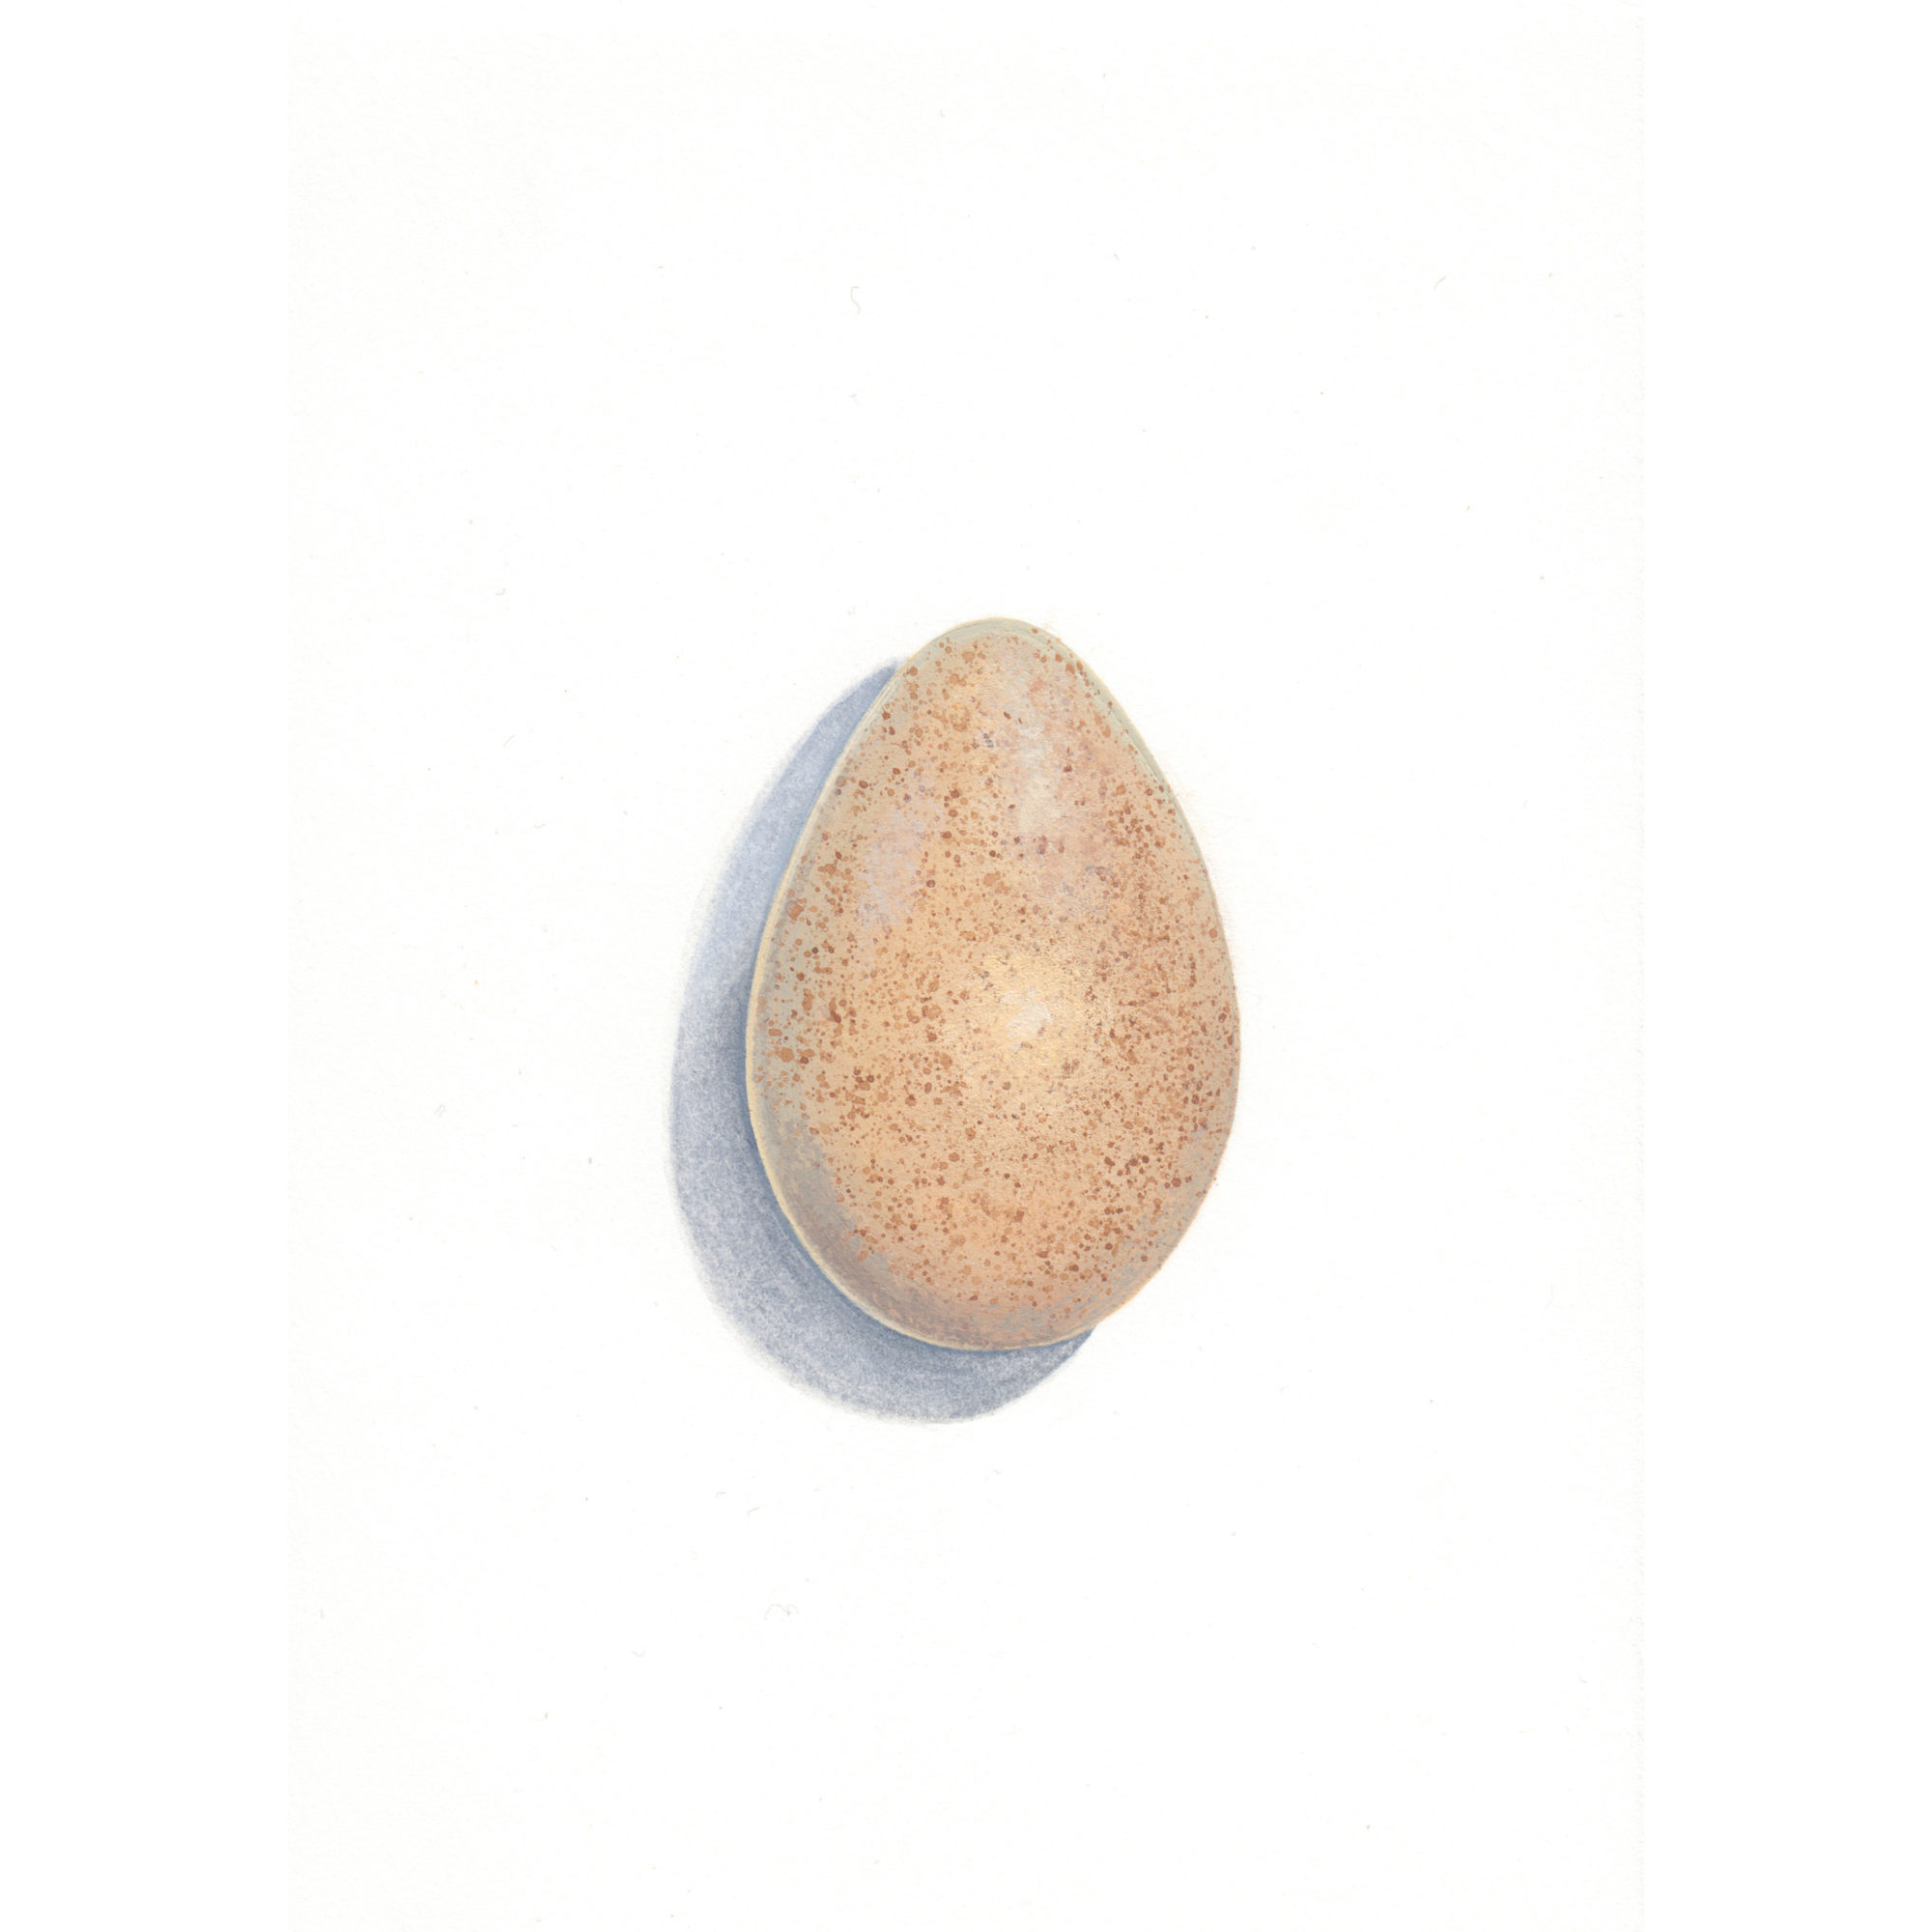 Apophenia: Turkey Egg